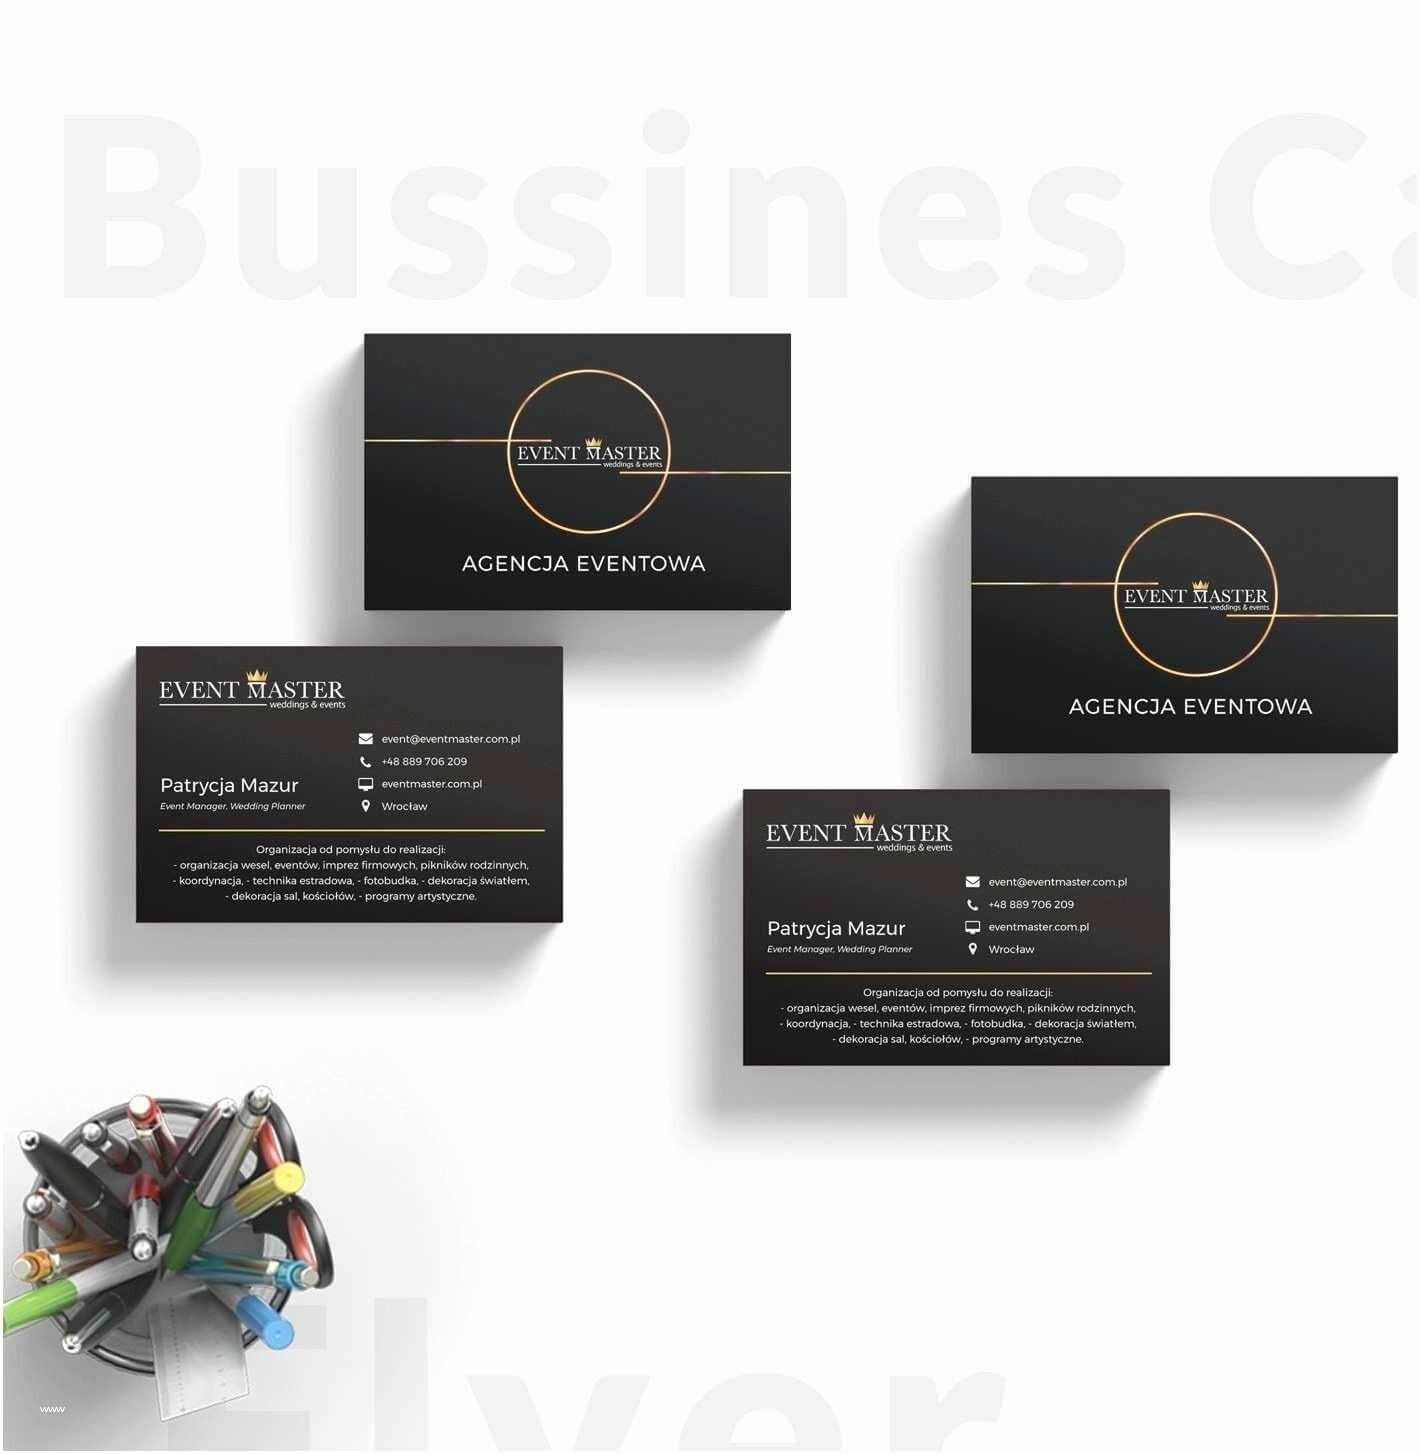 Gartner Business Cards Template – Apocalomegaproductions With Gartner Business Cards Template